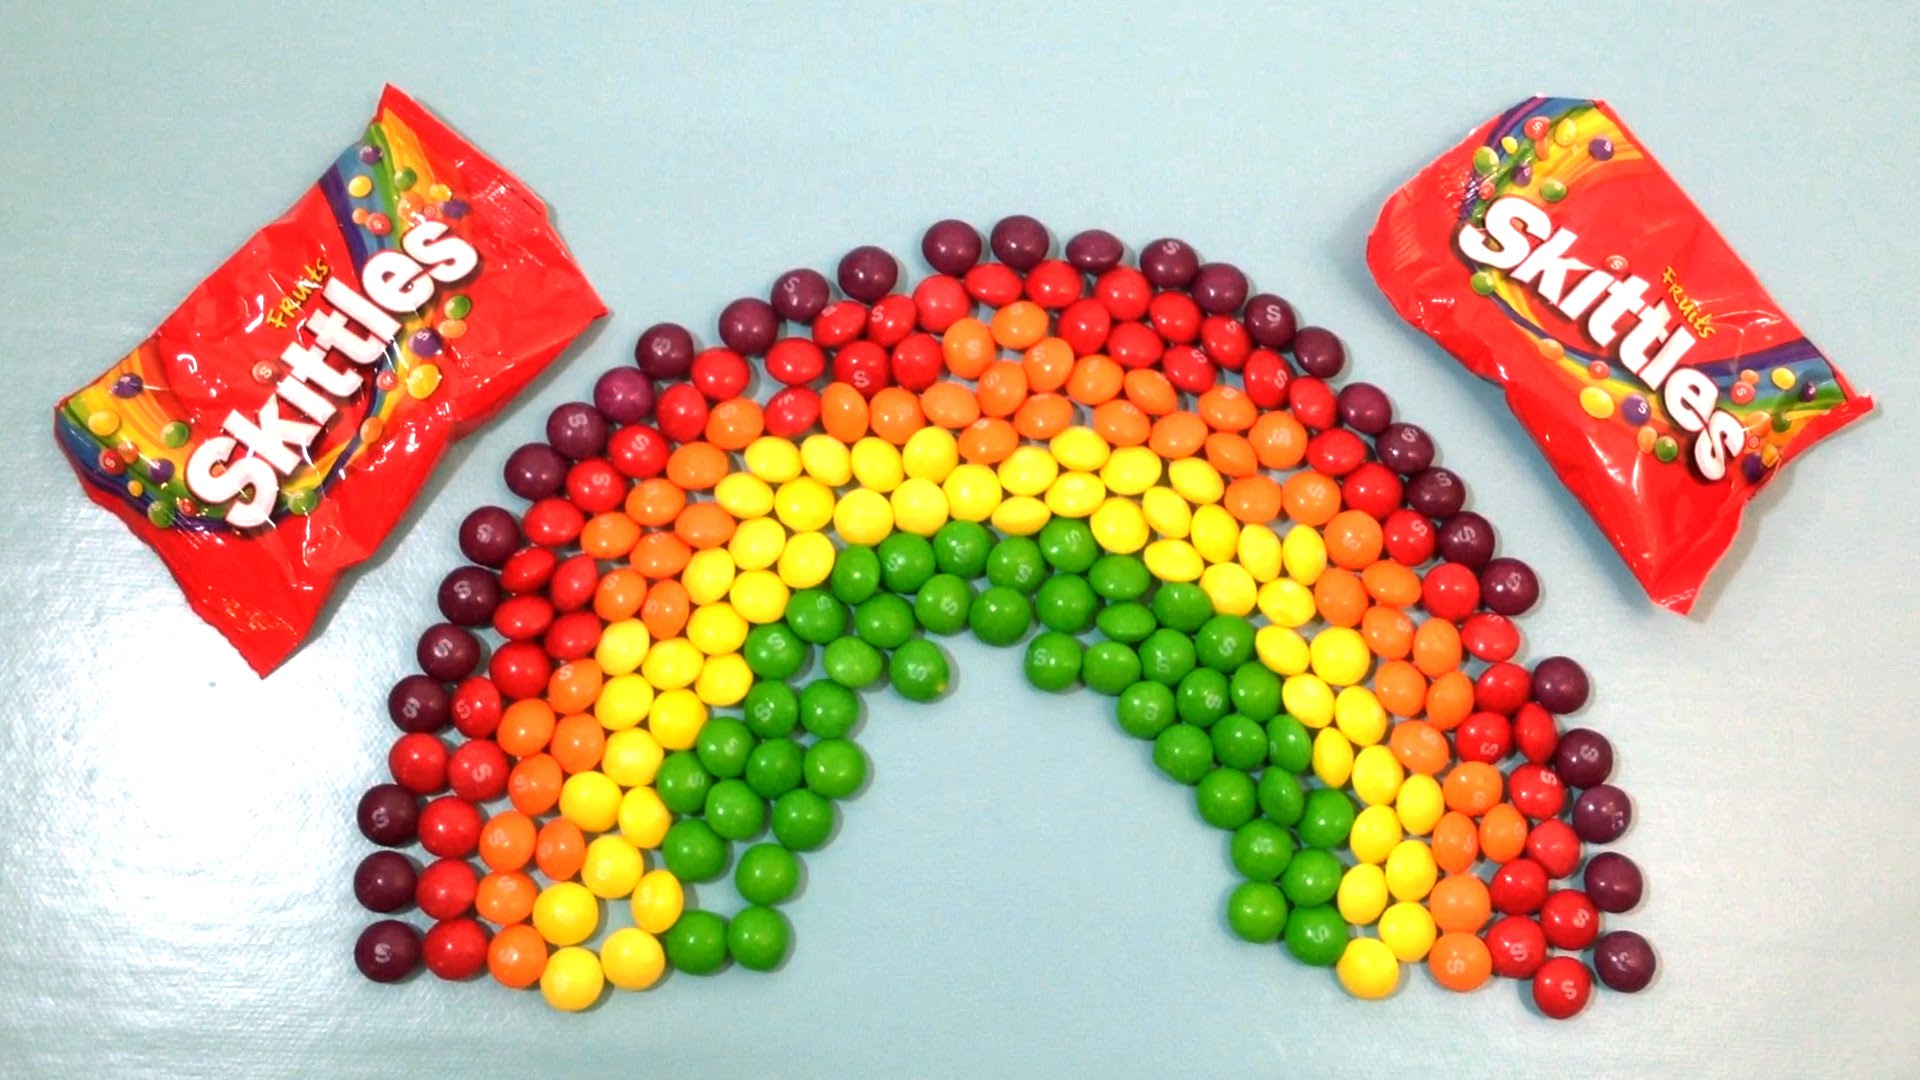 Rainbow skittles